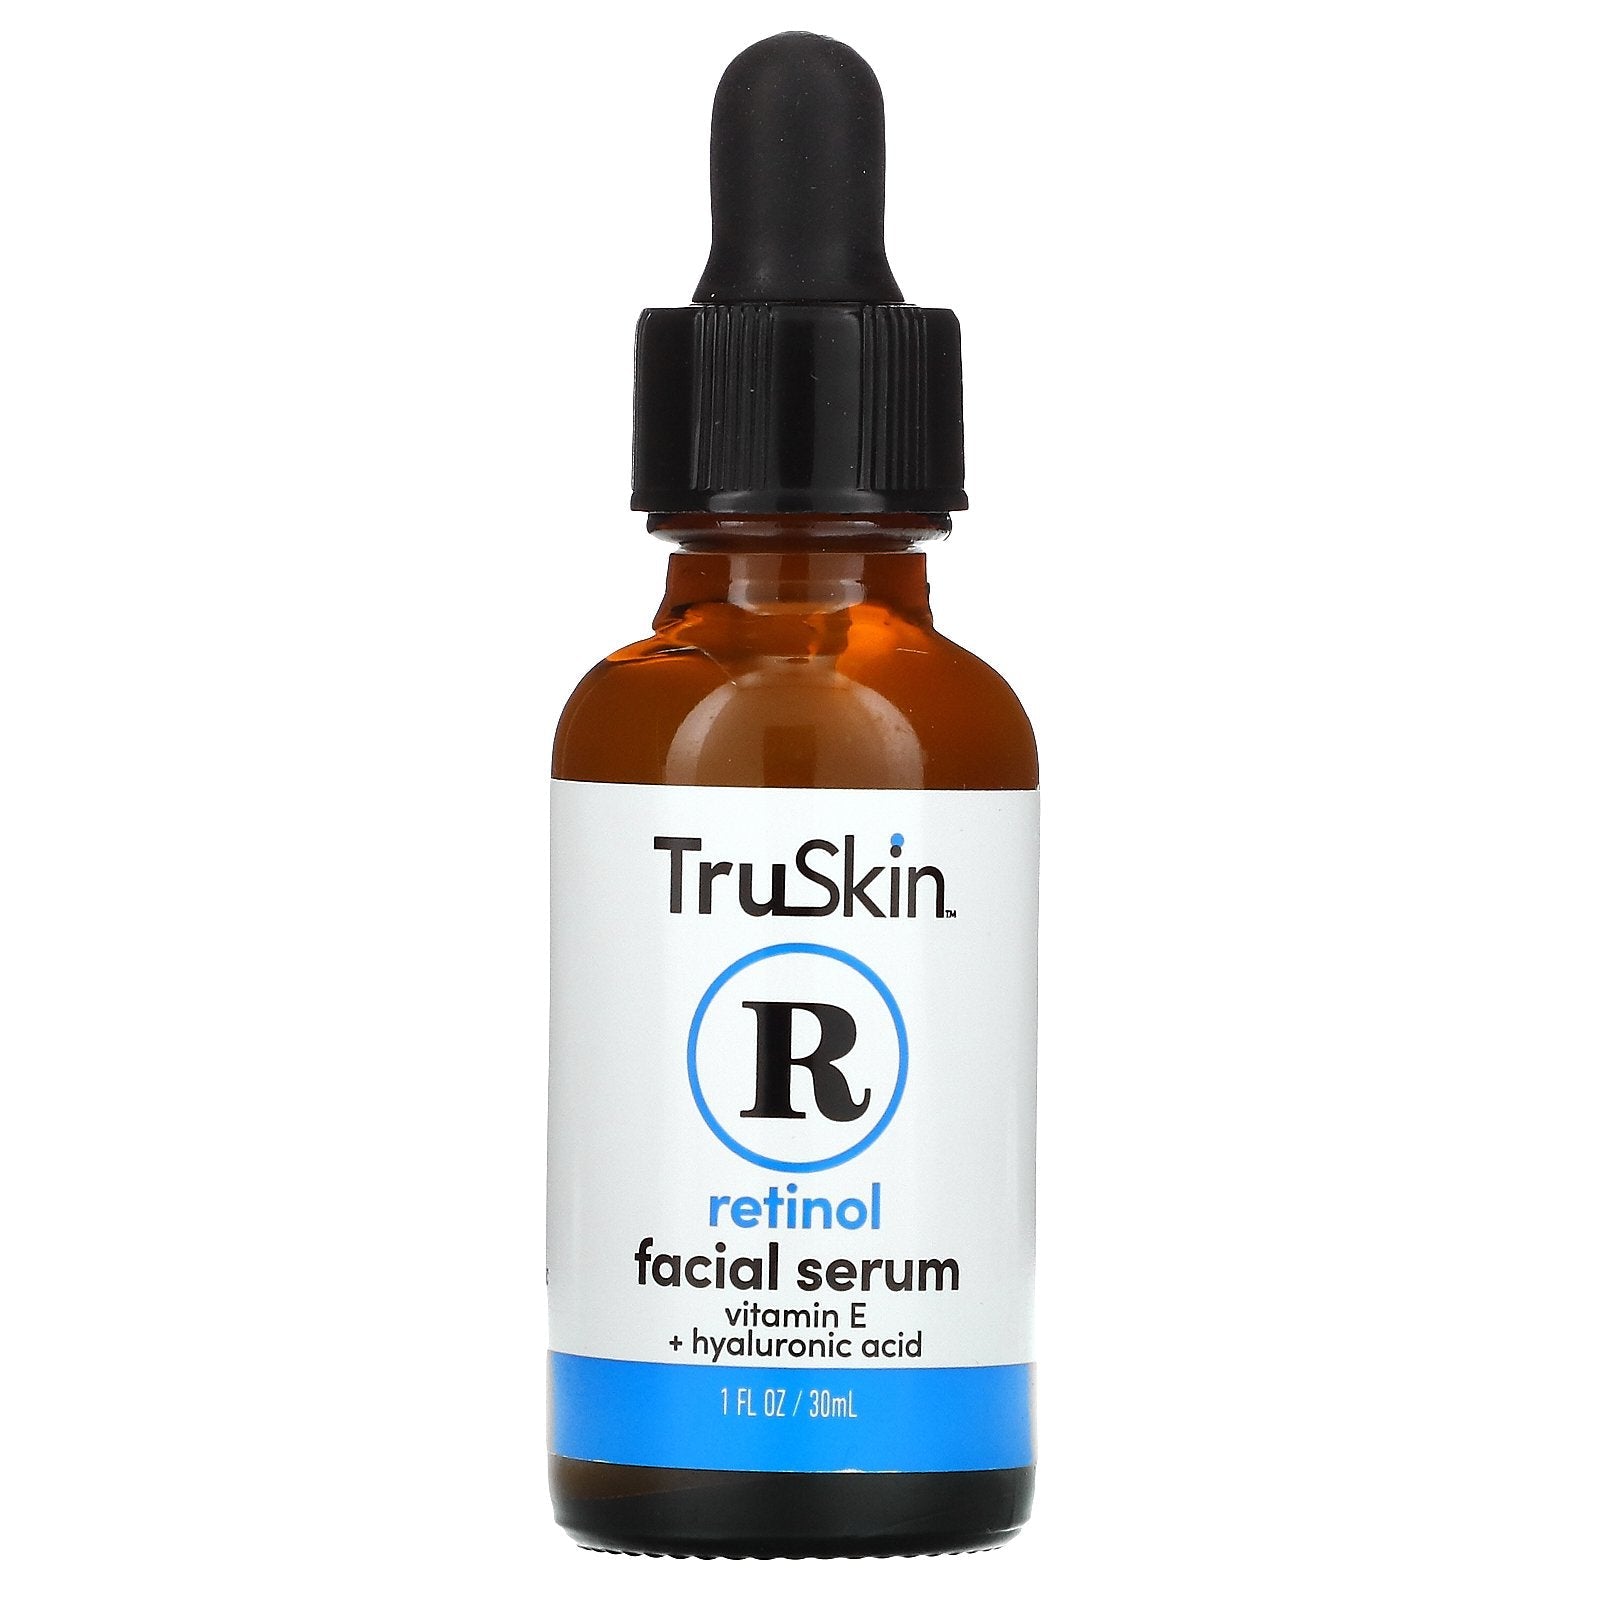 TruSkin Retinol Serum for Wrinkles & Fine Lines - Makeup MSash PakiMSan - TruSkin